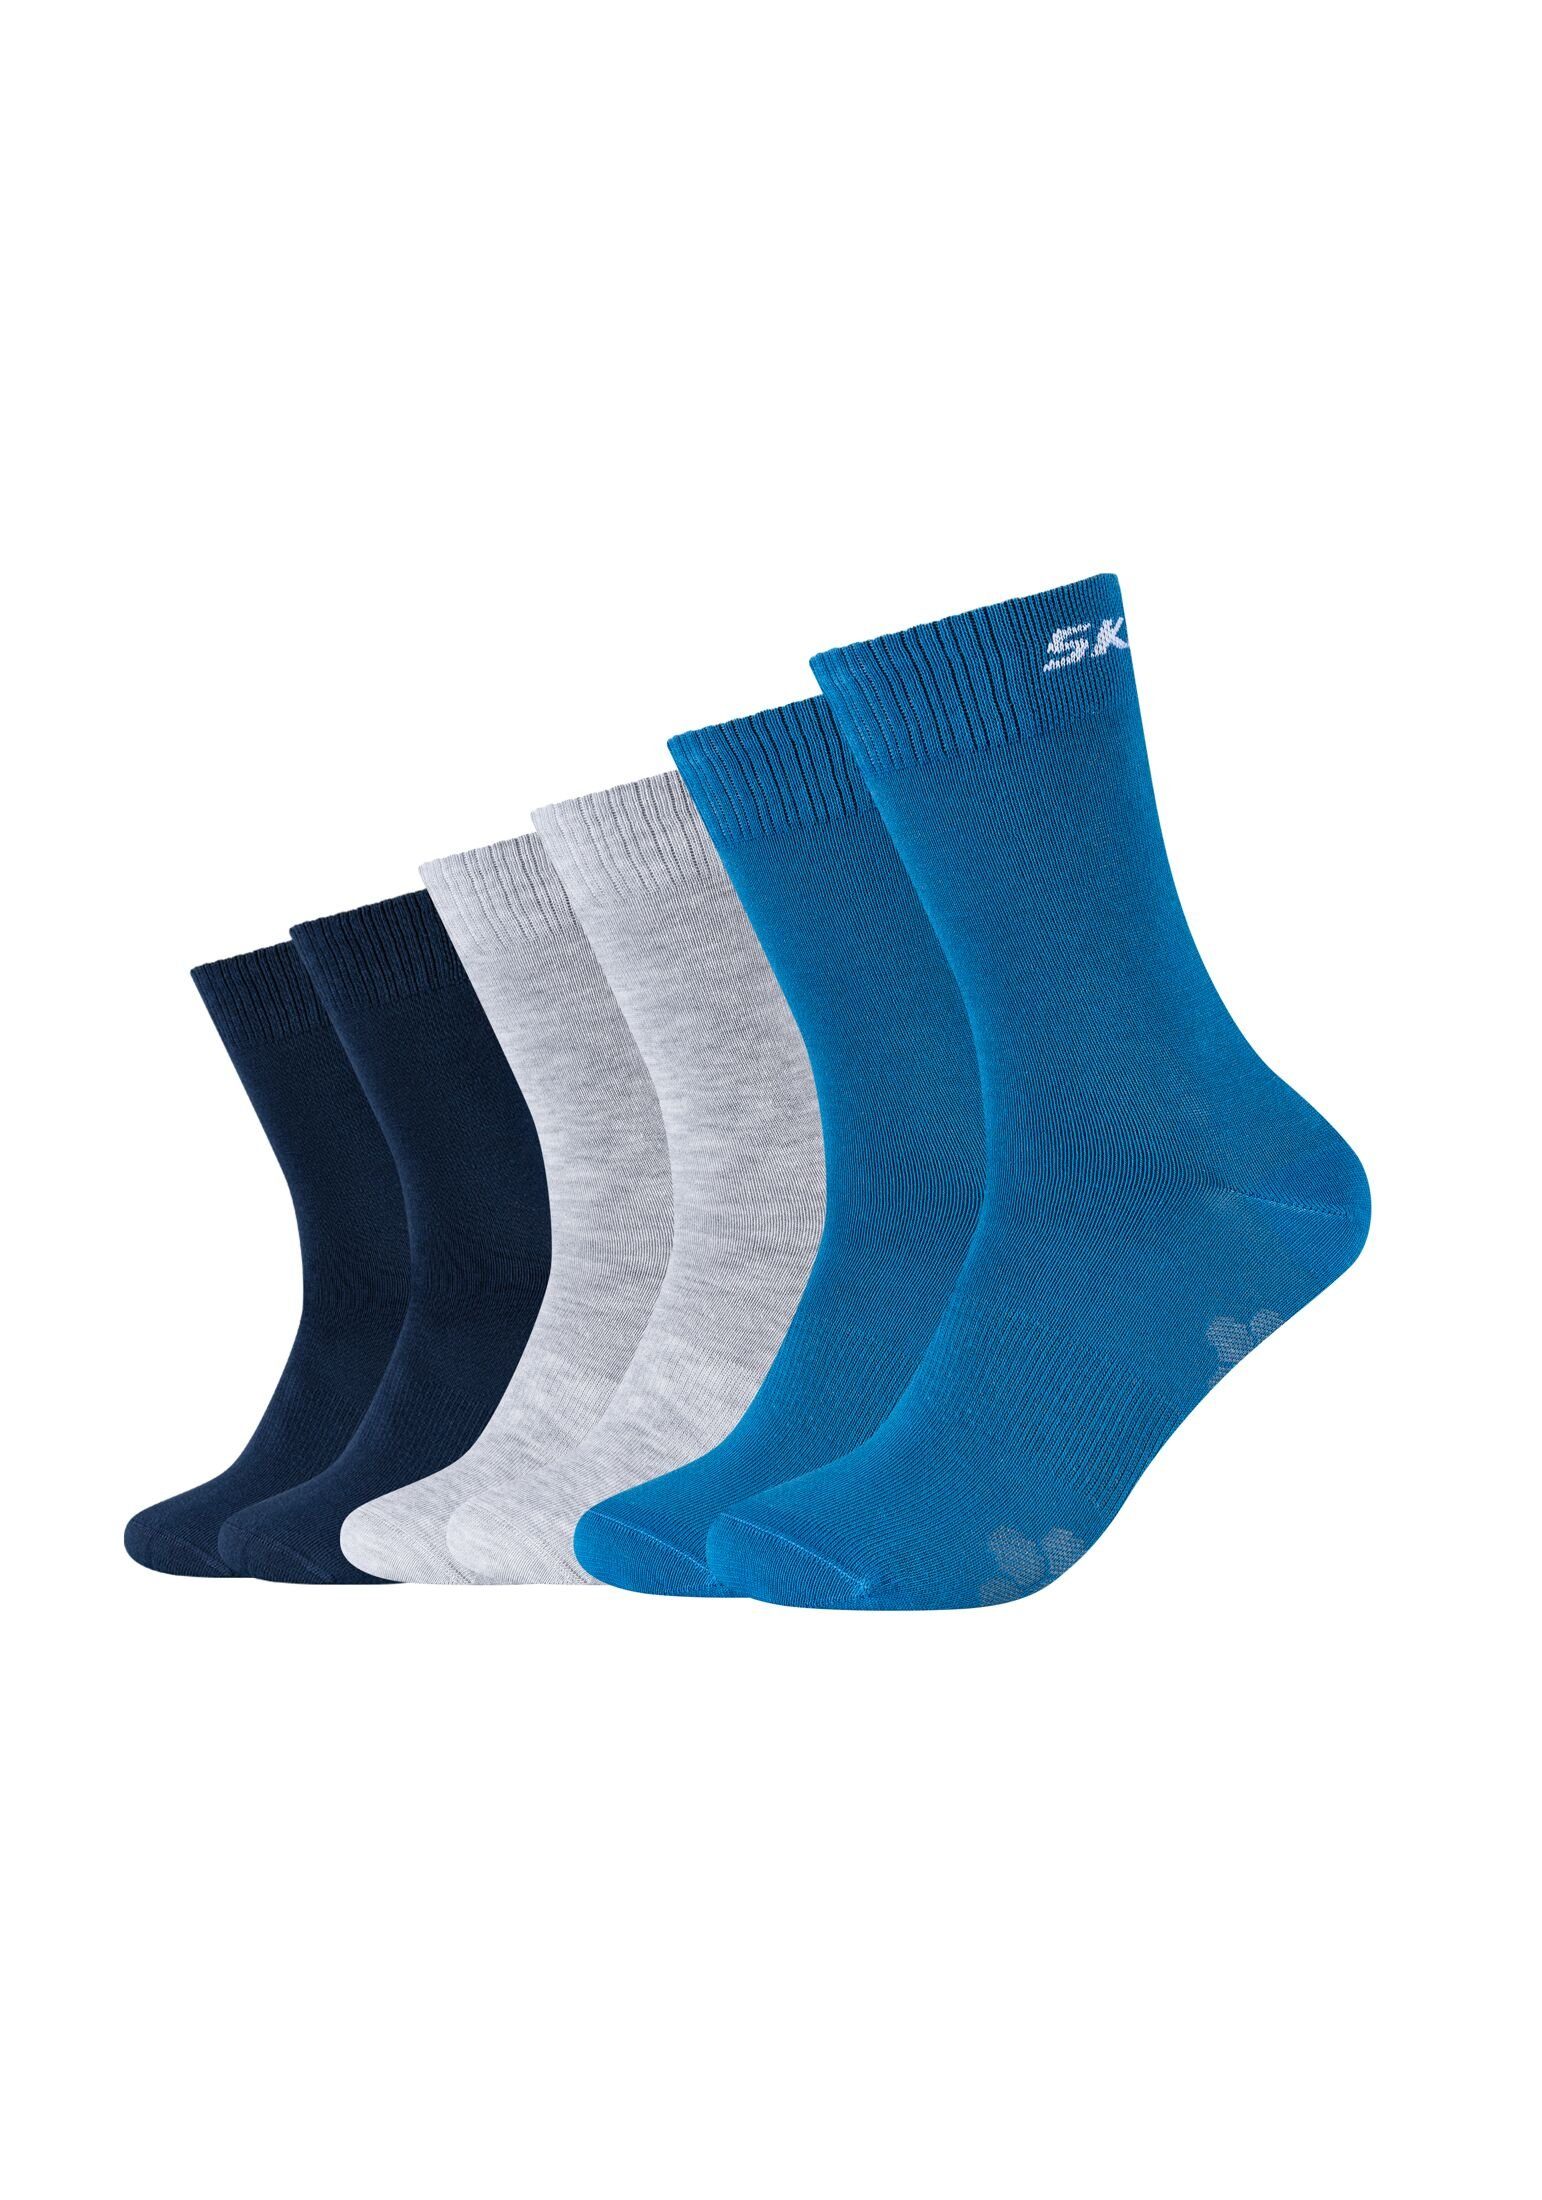 Skechers Socken Socken 6er Pack vallarta blue